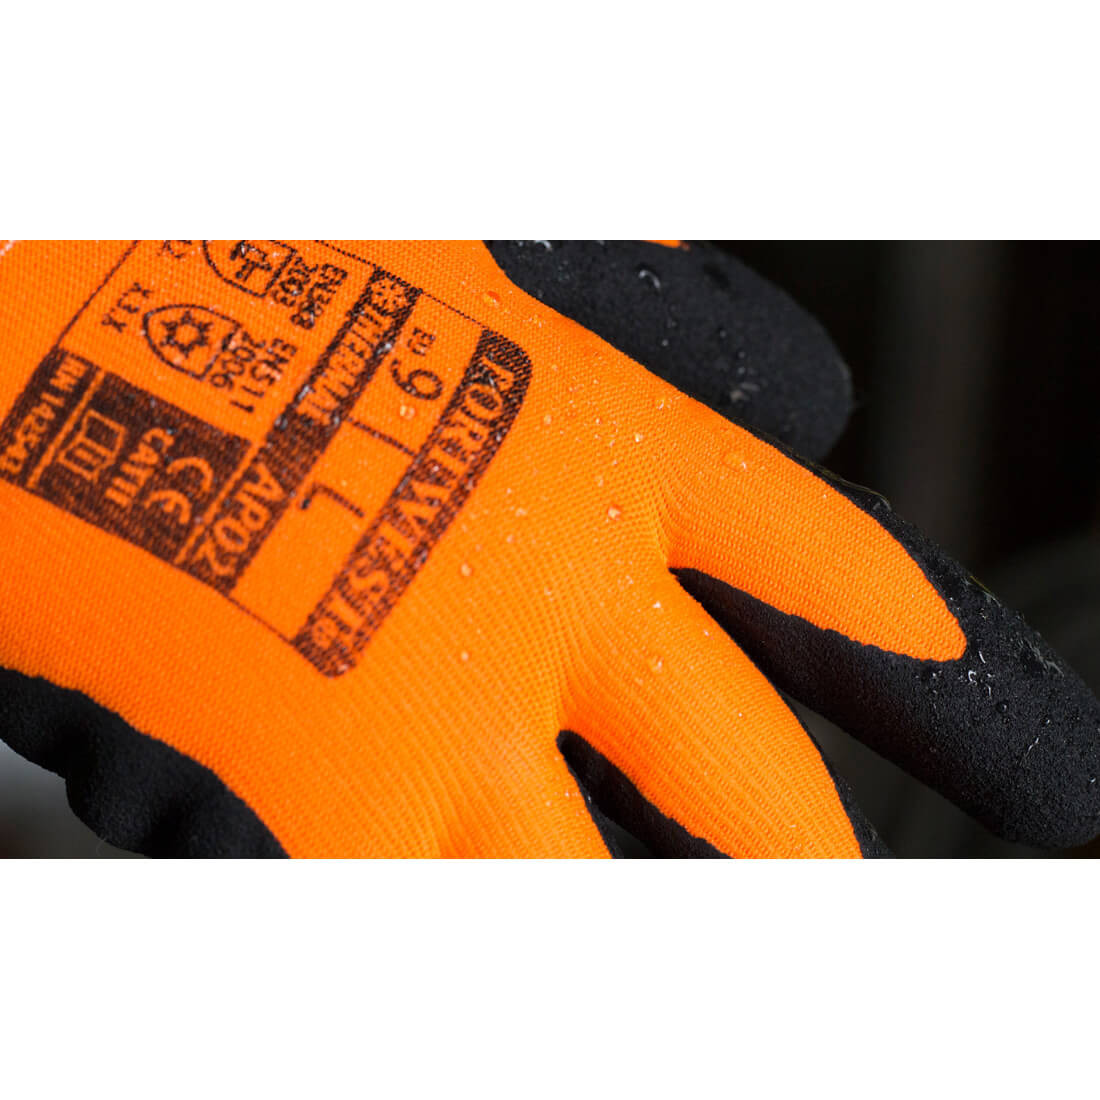 Gant Thermo Pro Ultra - Les équipements de protection individuelle